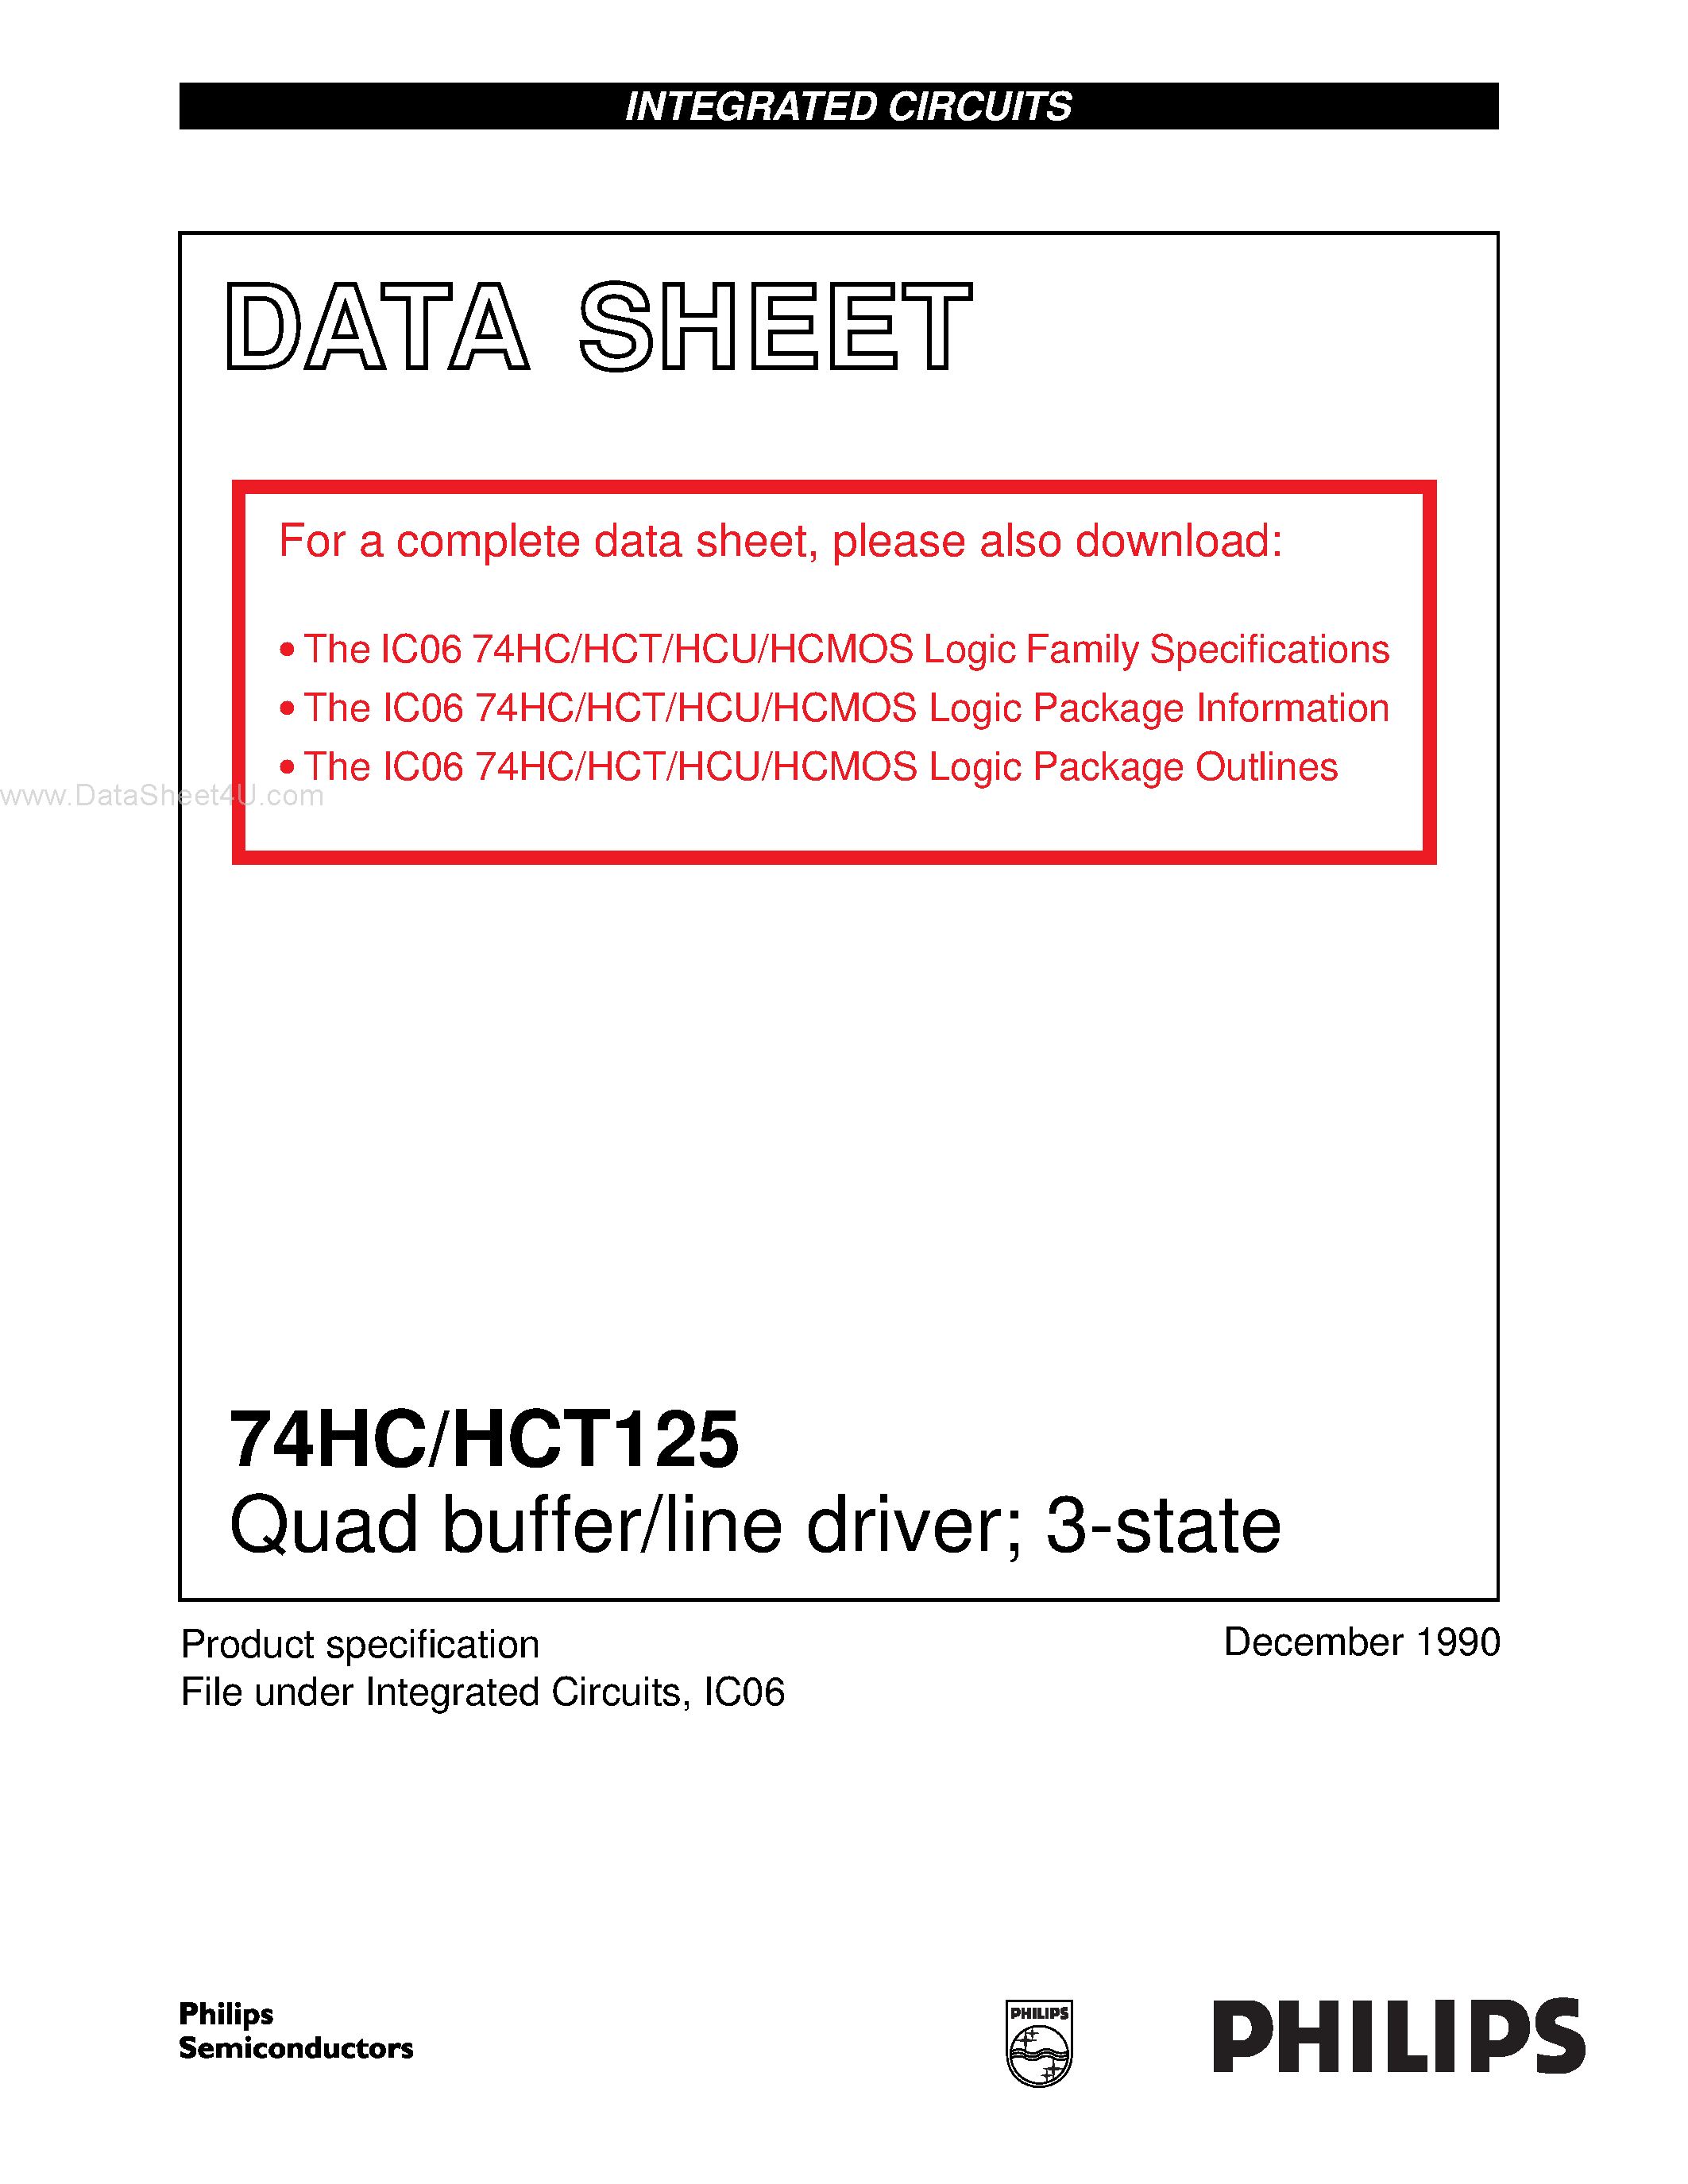 Даташит 74HCT125 - Quad buffer/line driver 3-state страница 1